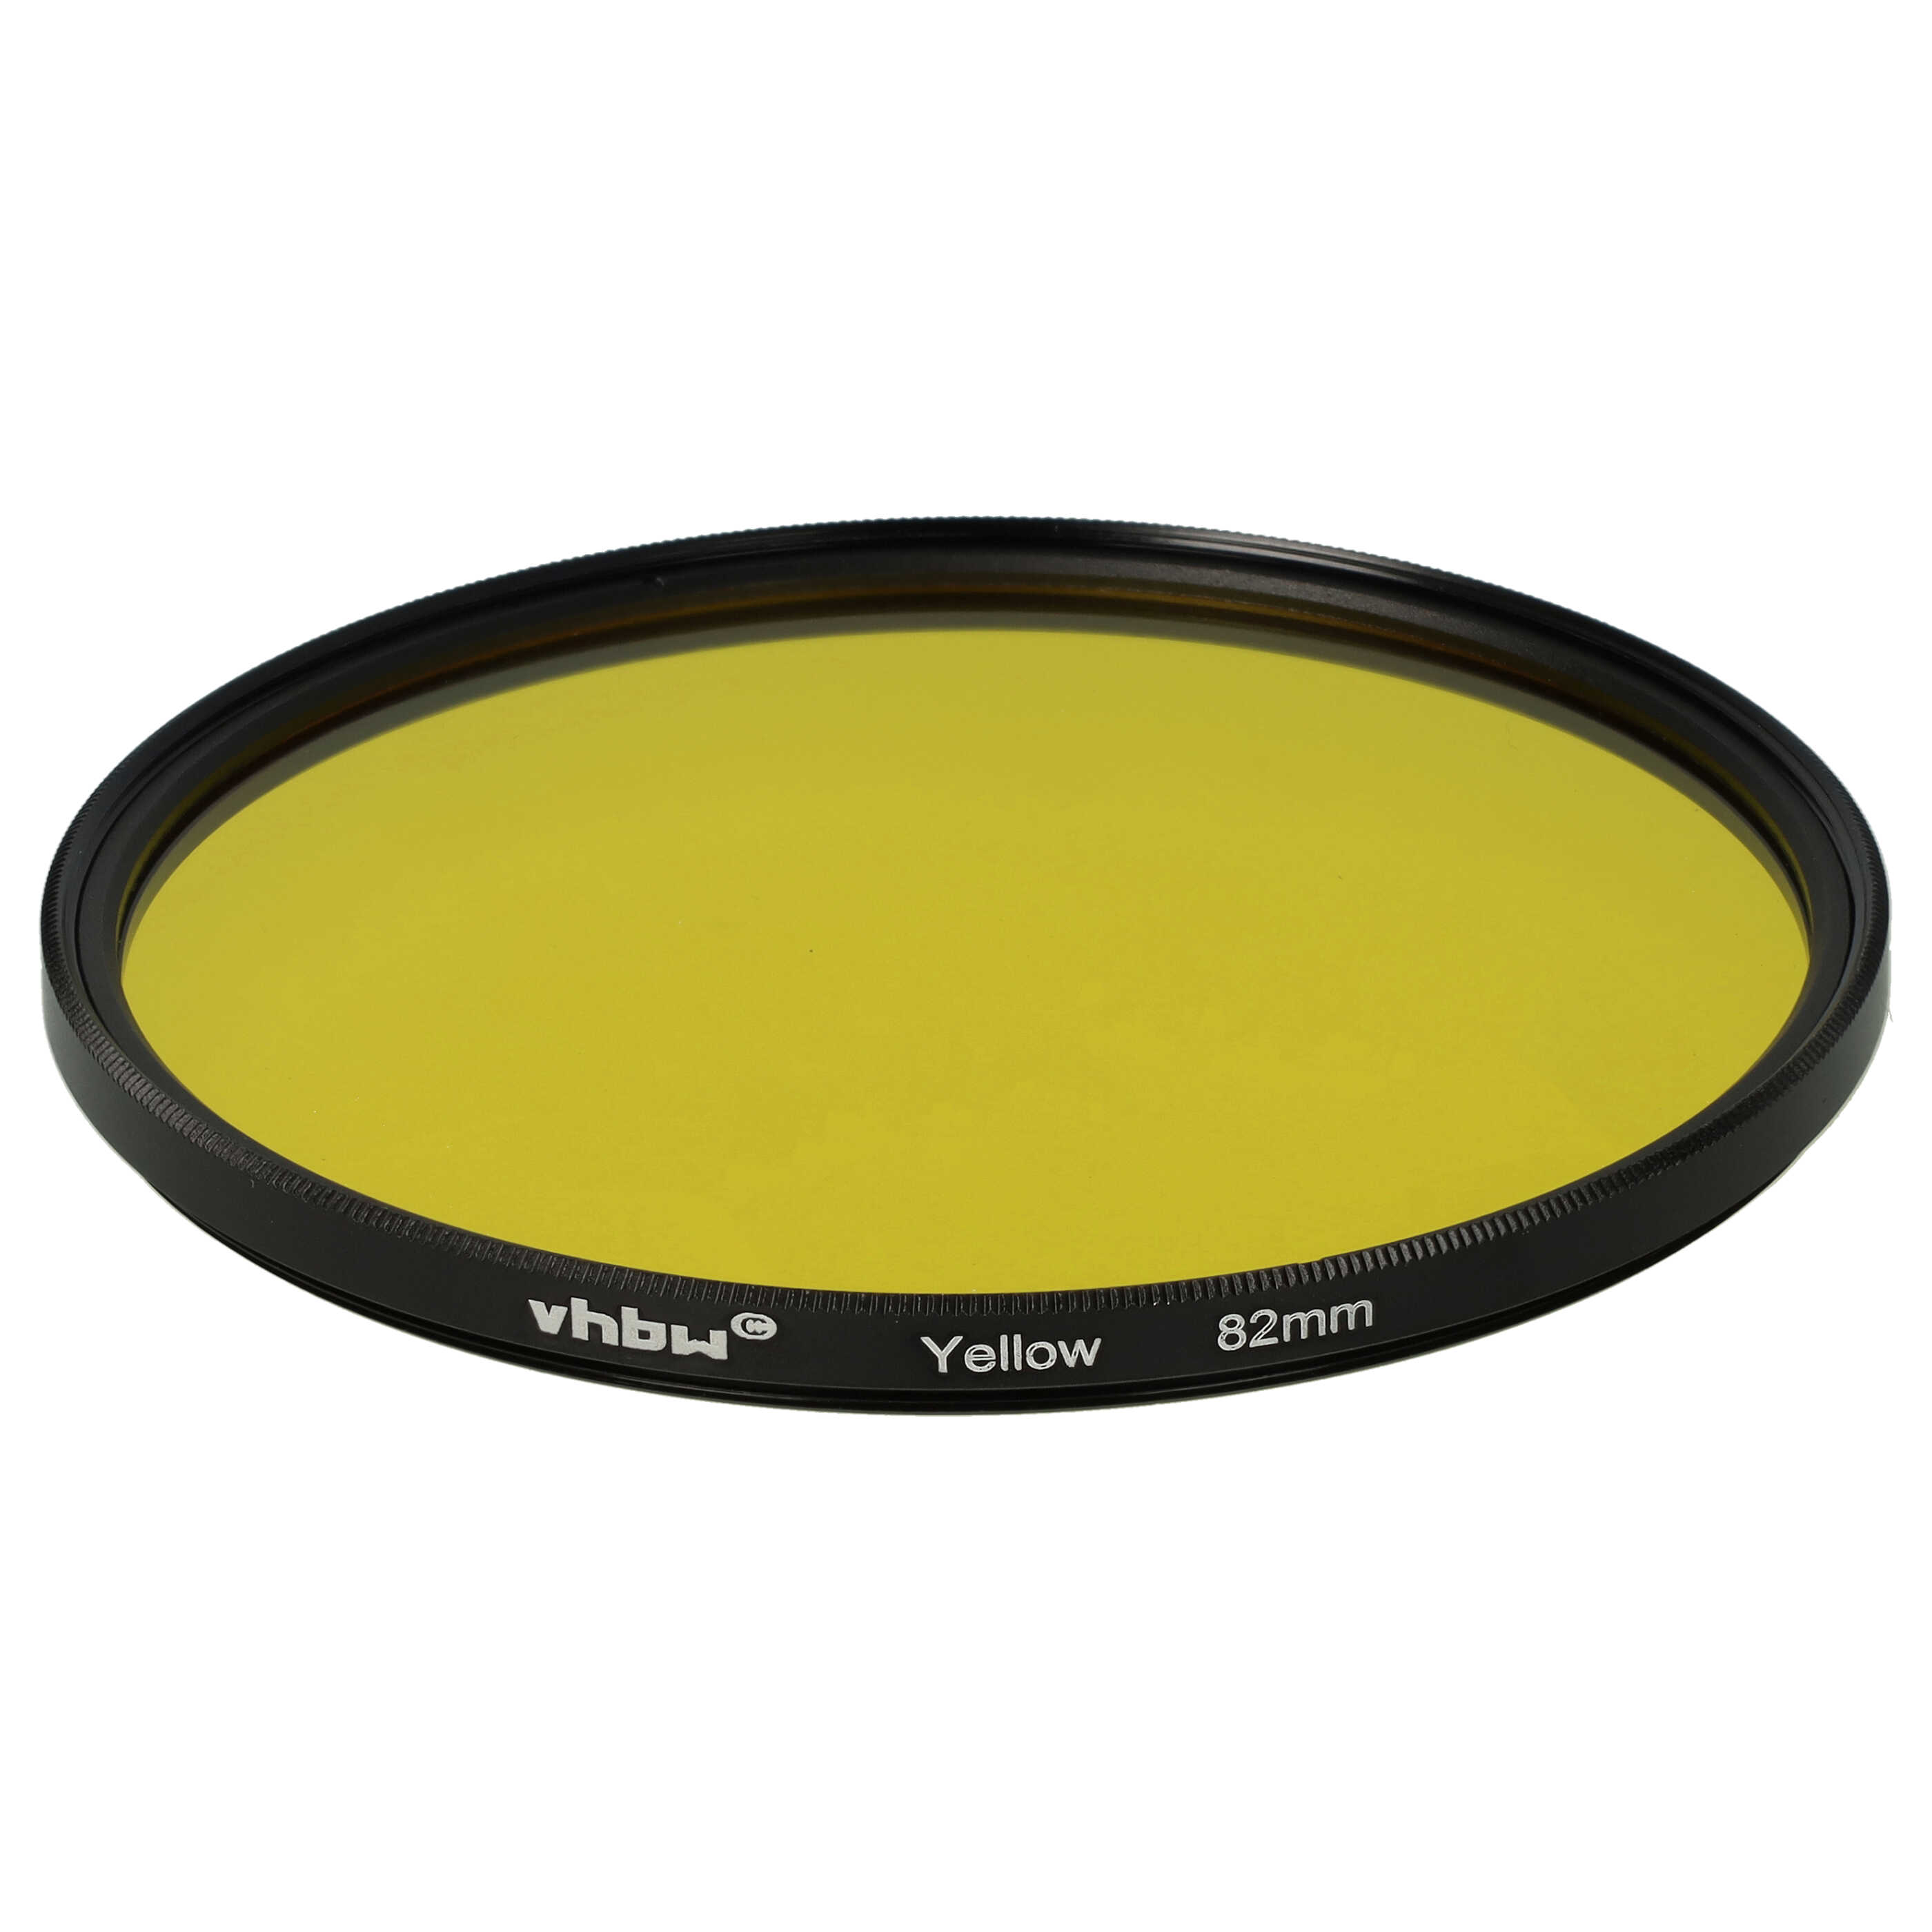 Farbfilter gelb passend für Kamera Objektive mit 82 mm Filtergewinde - Gelbfilter